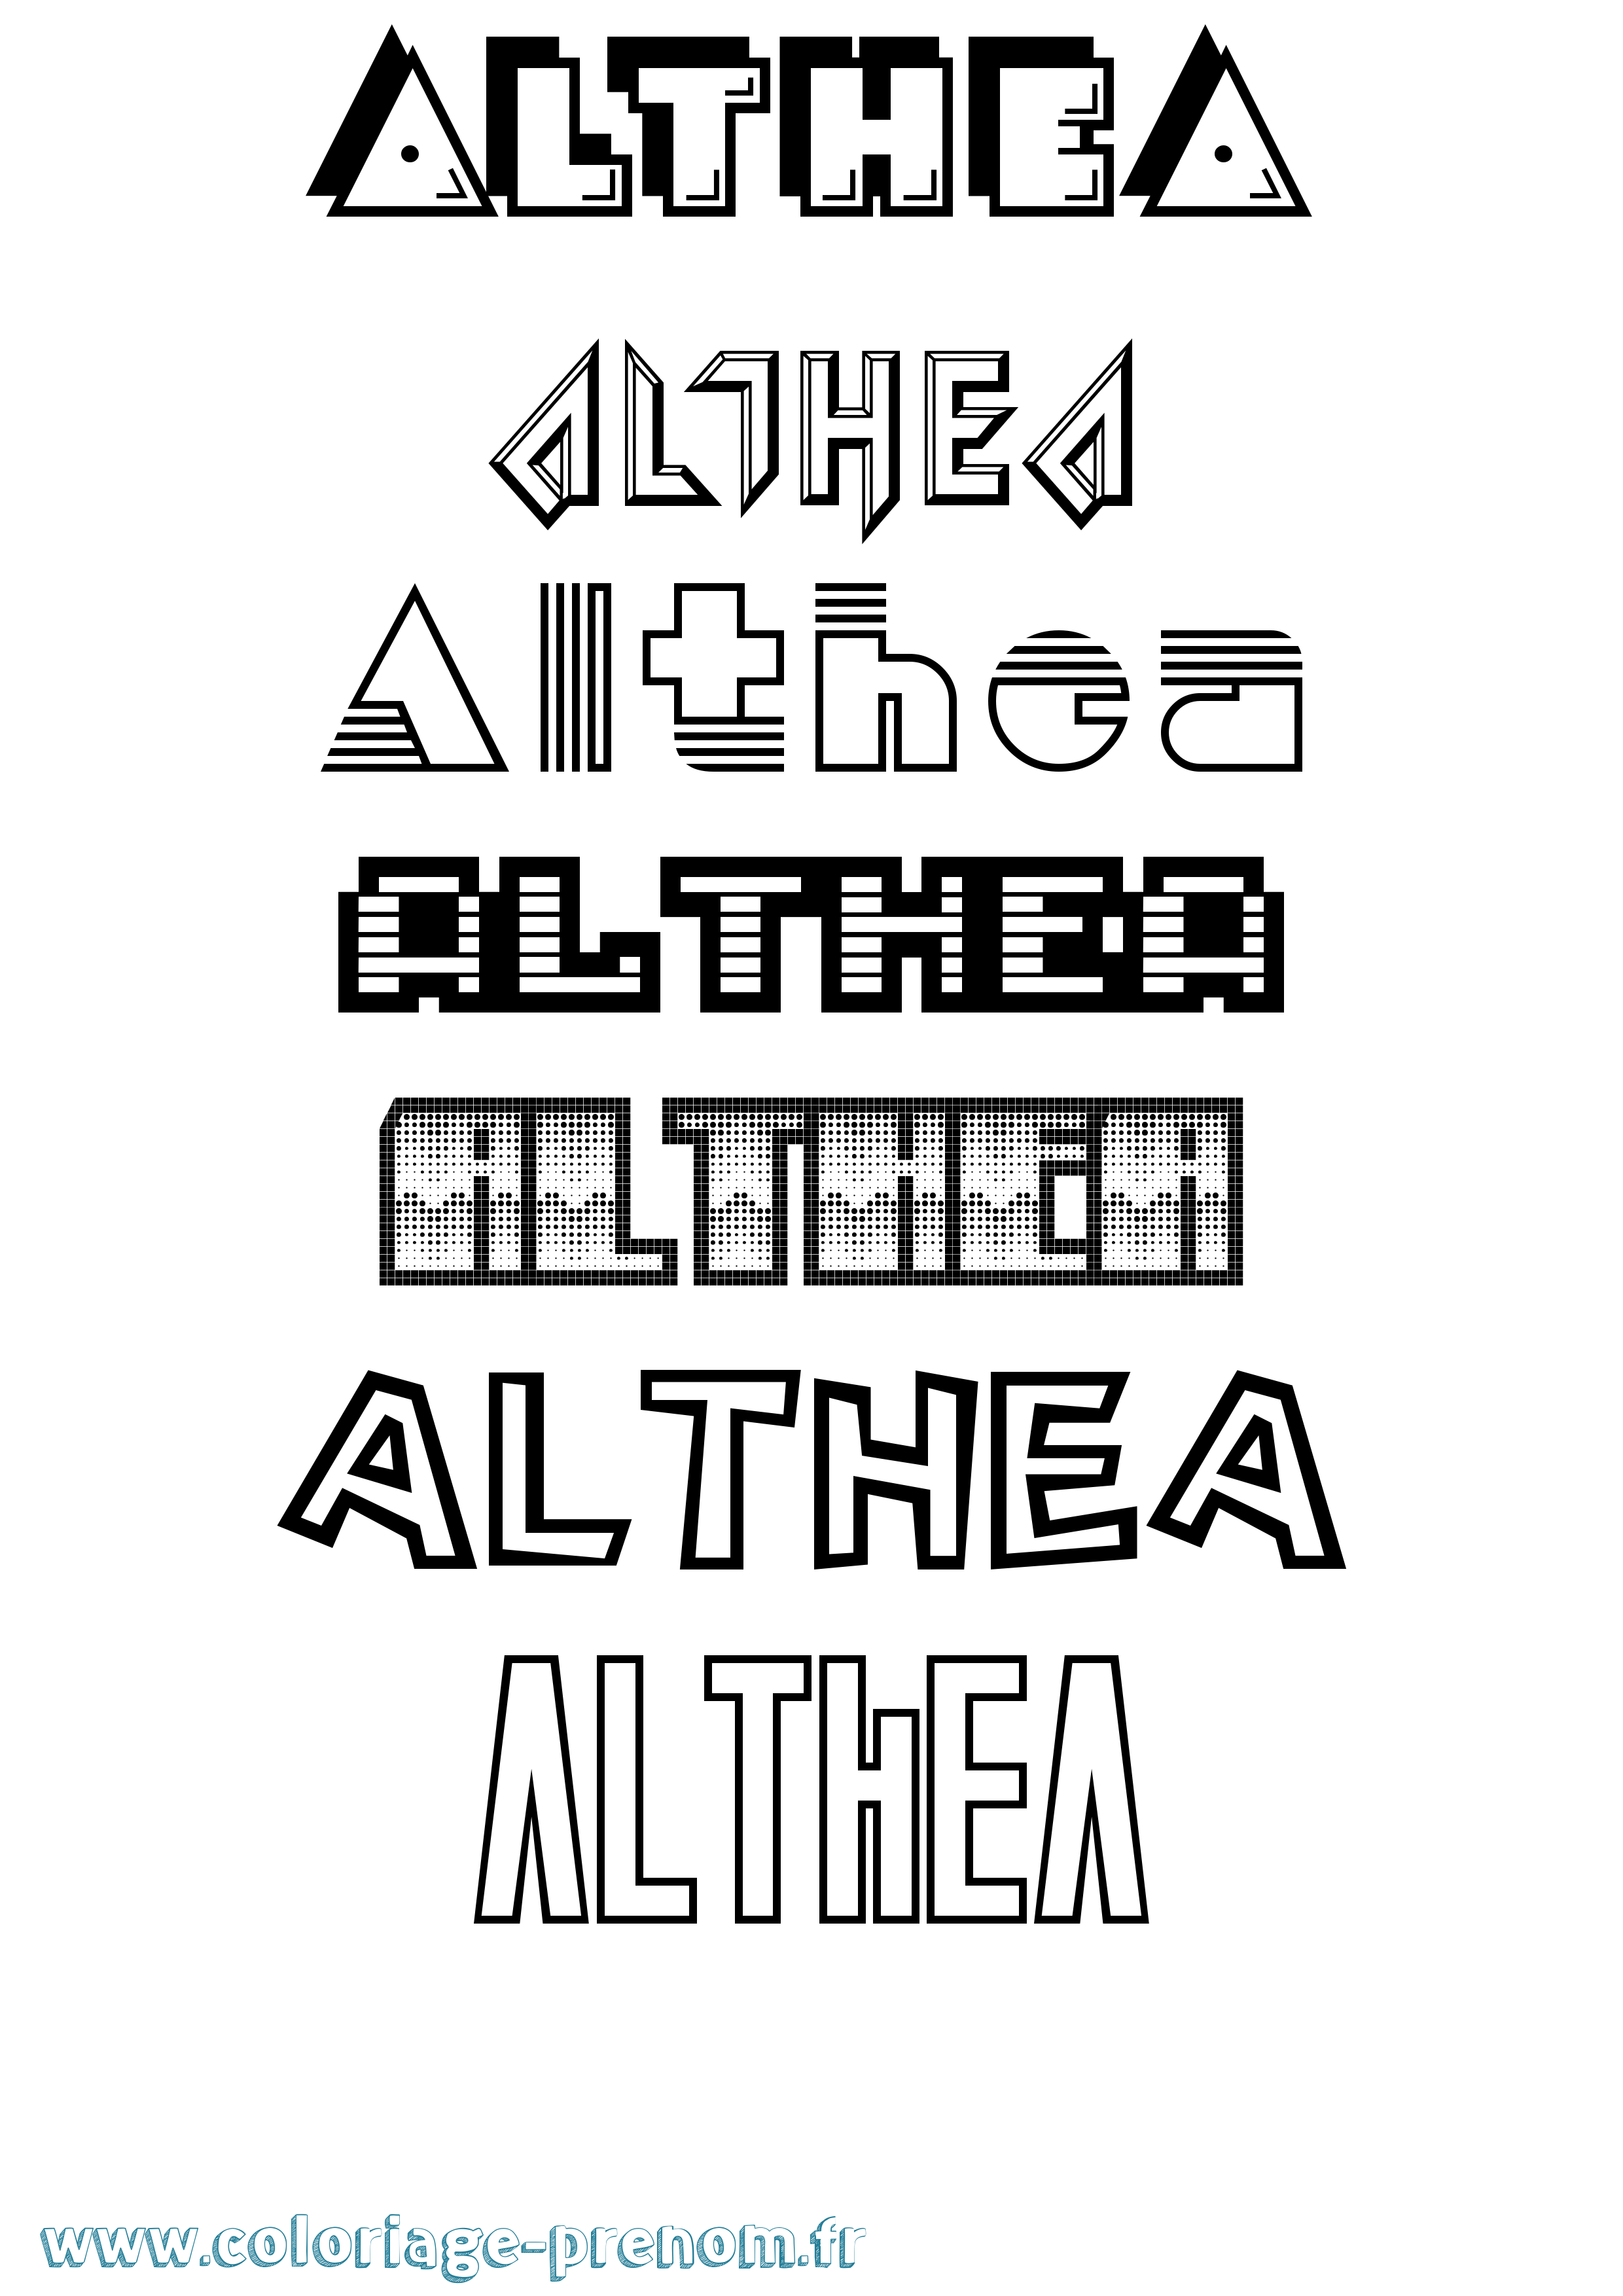 Coloriage prénom Althea Jeux Vidéos